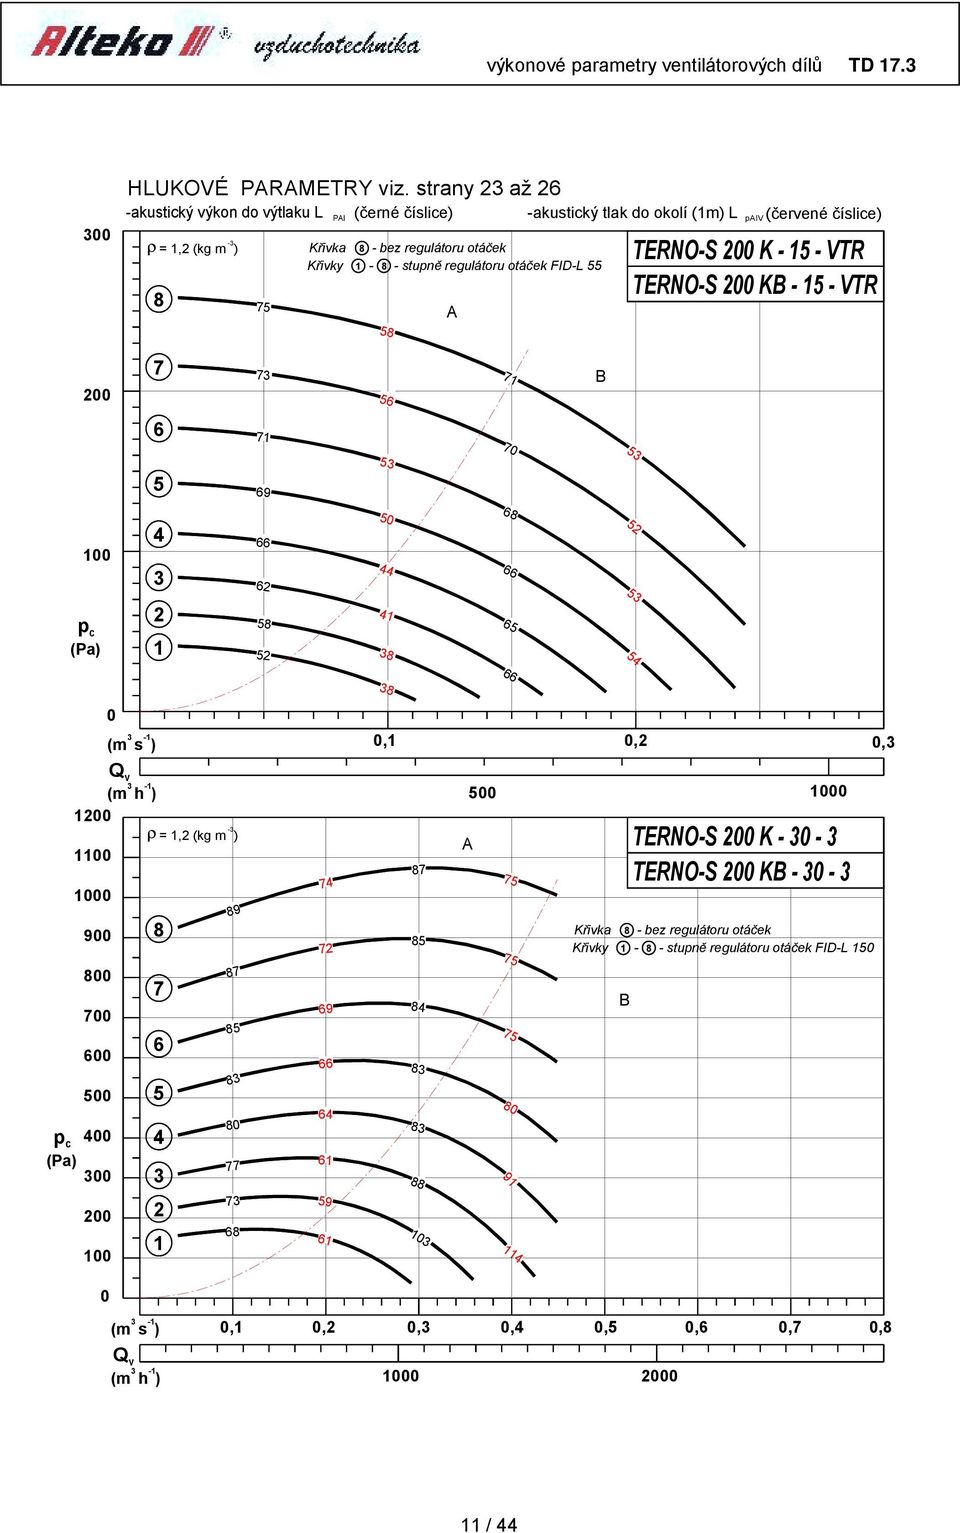 Křivka 8 - bez regulátoru otáček Křivky - 8 - stupně regulátoru otáček FID-L TERNO-S K - - VTR TERNO-S K - - VTR 7 7 6 6 6 8 8 7 6 (m